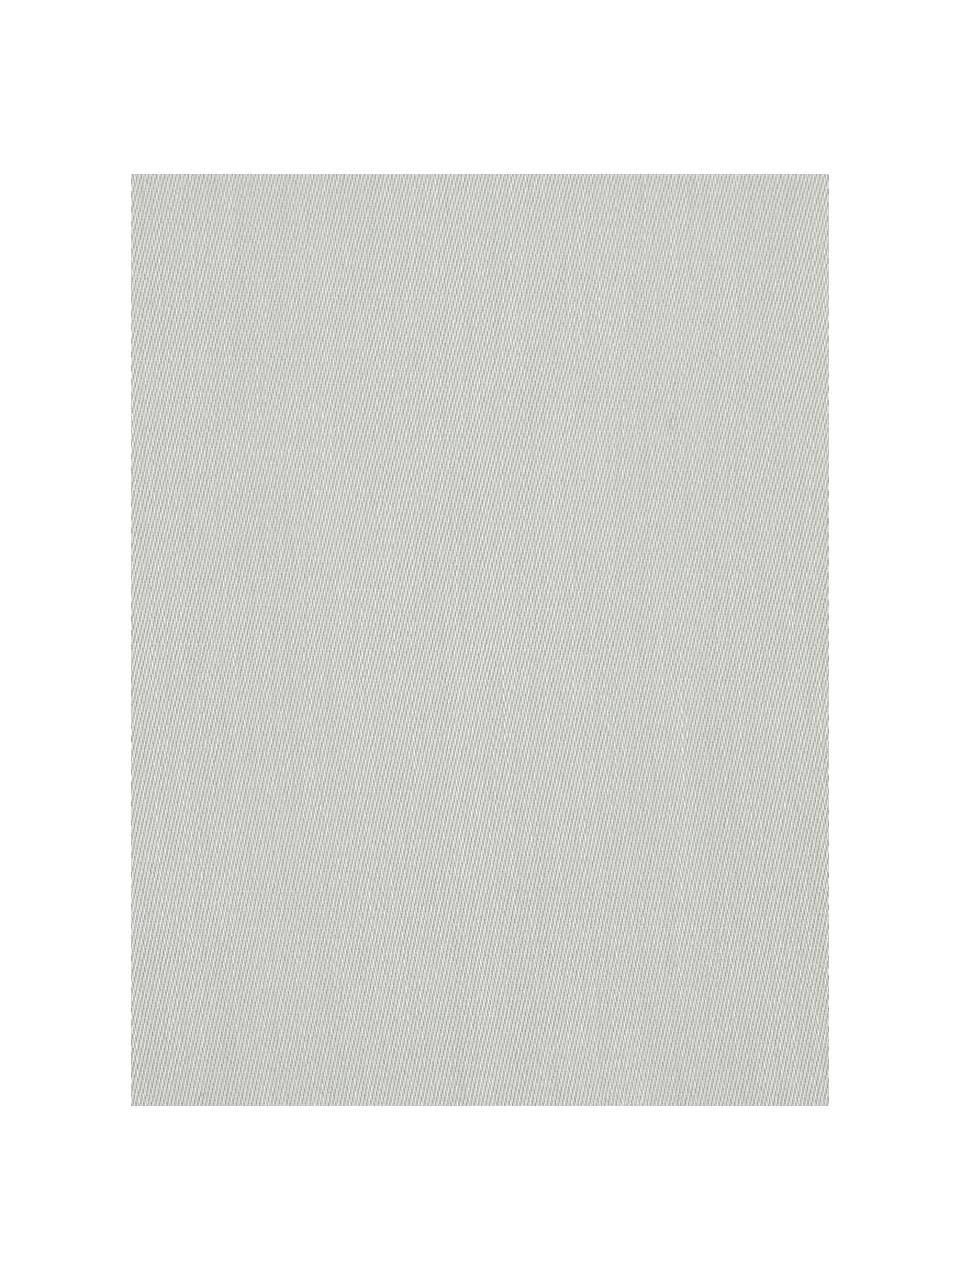 Biancheria da letto in raso di cotone grigio chiaro Comfort, Tessuto: raso Densità del filo 250, Grigio chiaro, 150 x 300 cm + 1 federa 50 x 80 cm